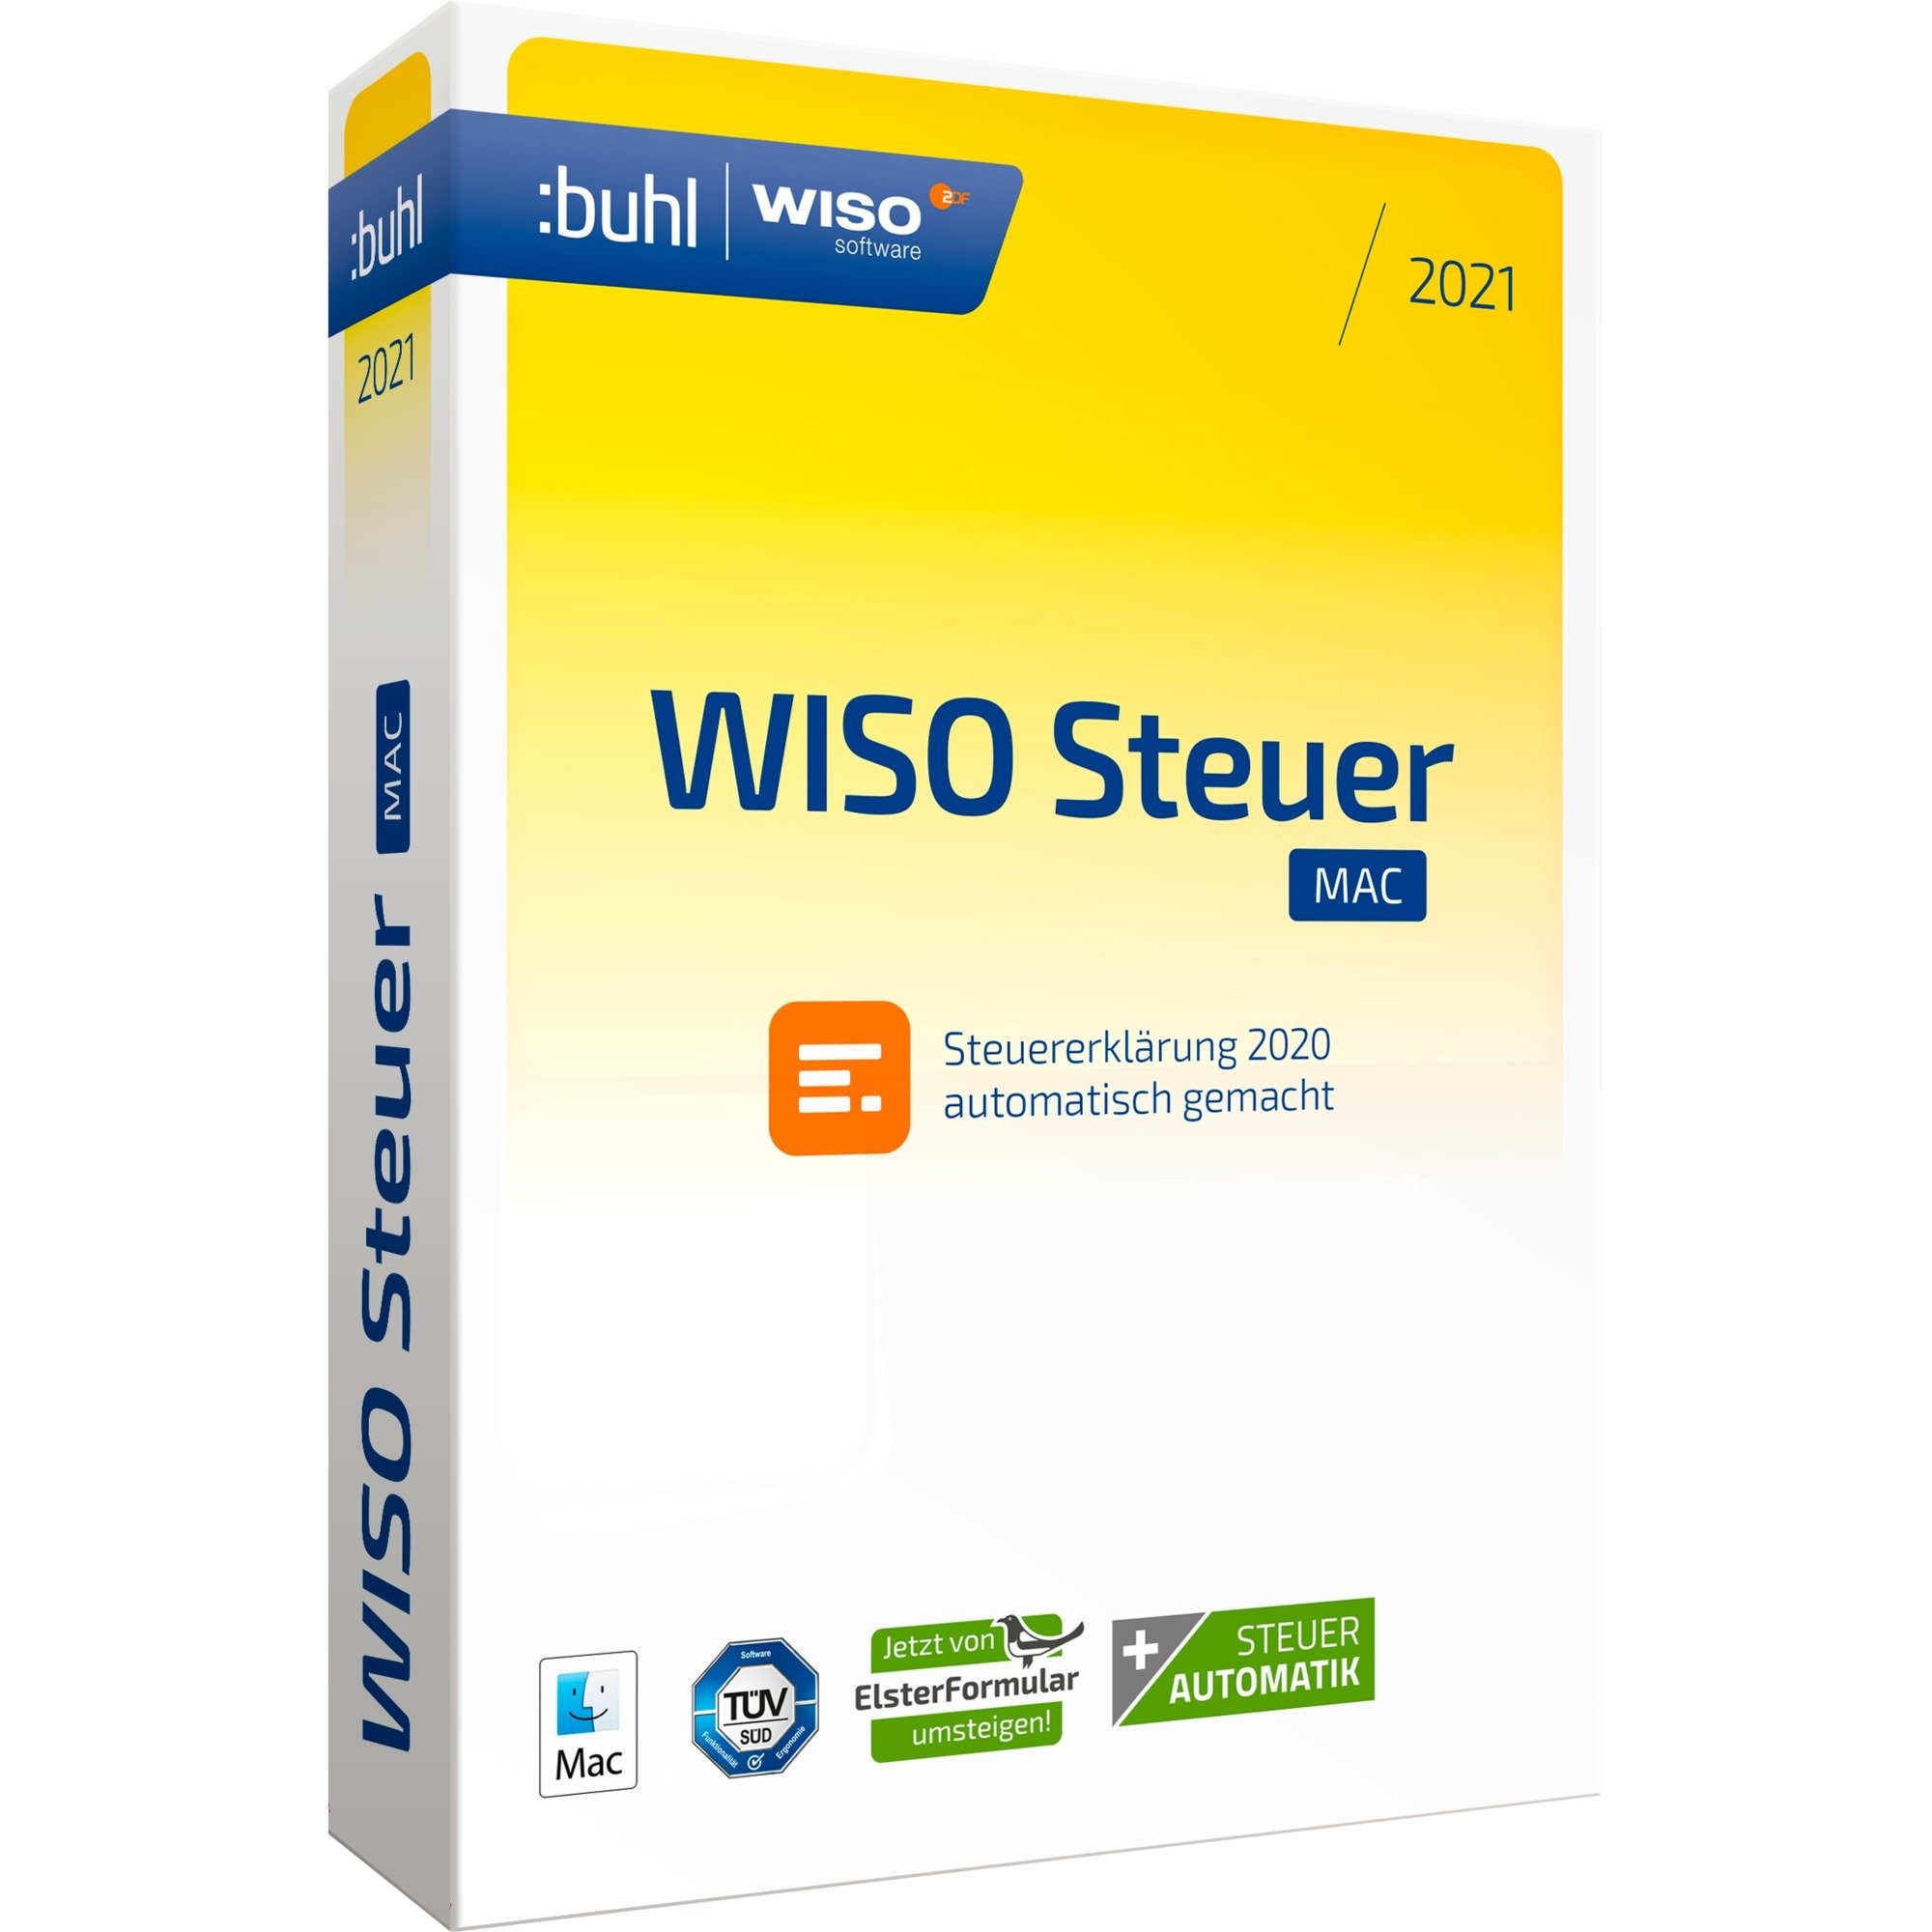 Image of Alternate - WISO steuer:Mac 2021, Finanz-Software online einkaufen bei Alternate